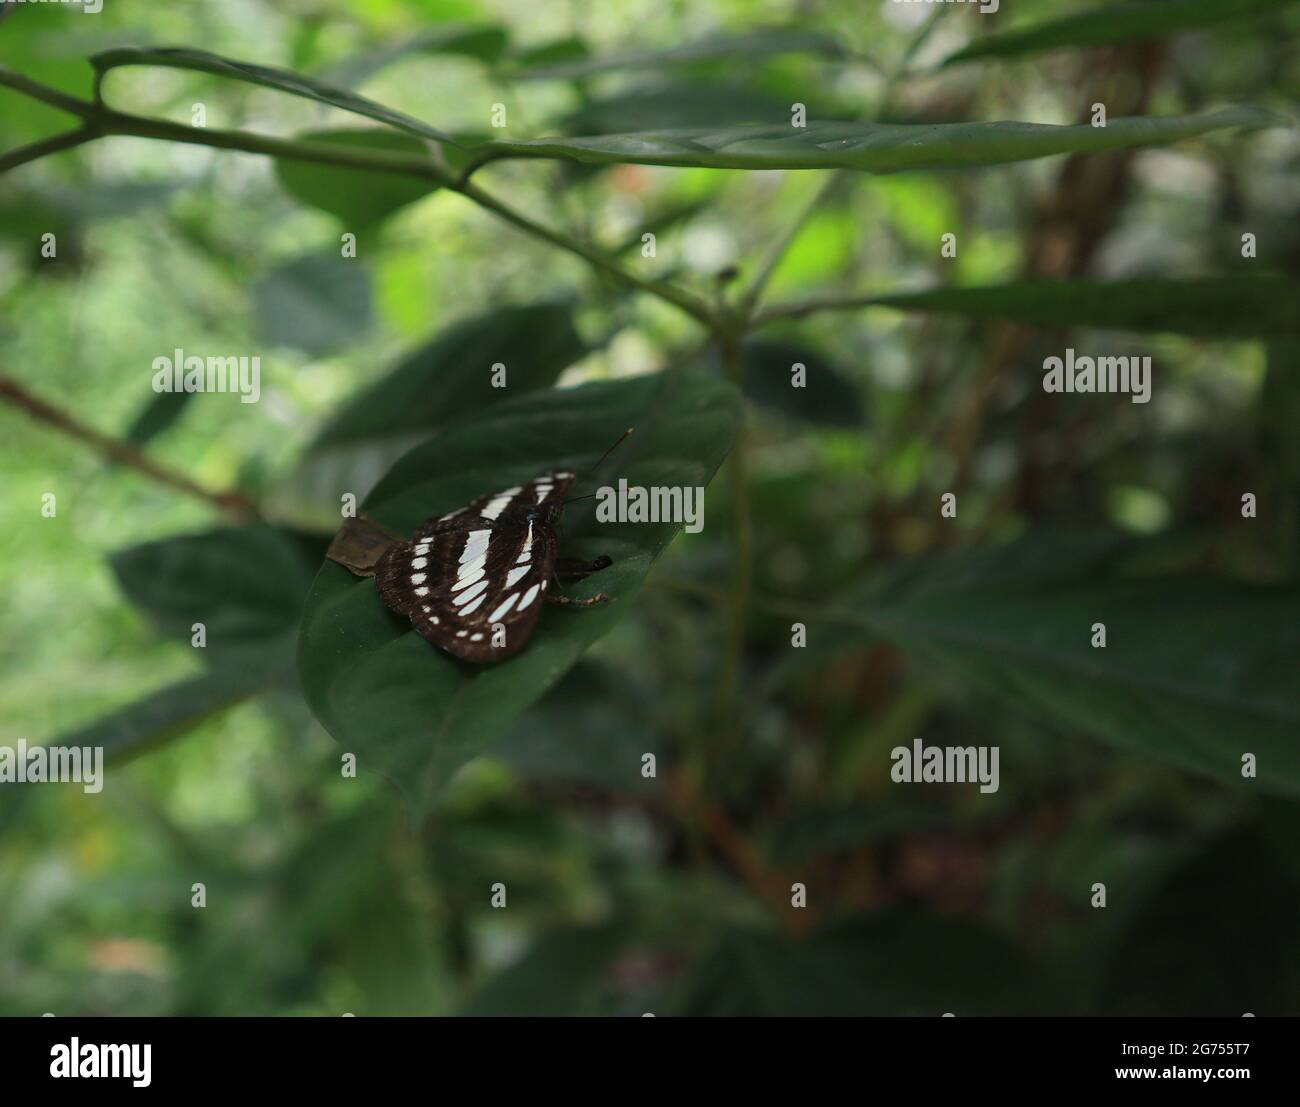 Ein gewöhnlicher Segler-Schmetterling, der auf einem Blatt sitzt und seine Flügel parallel zum Blatt ausbreitet Stockfoto